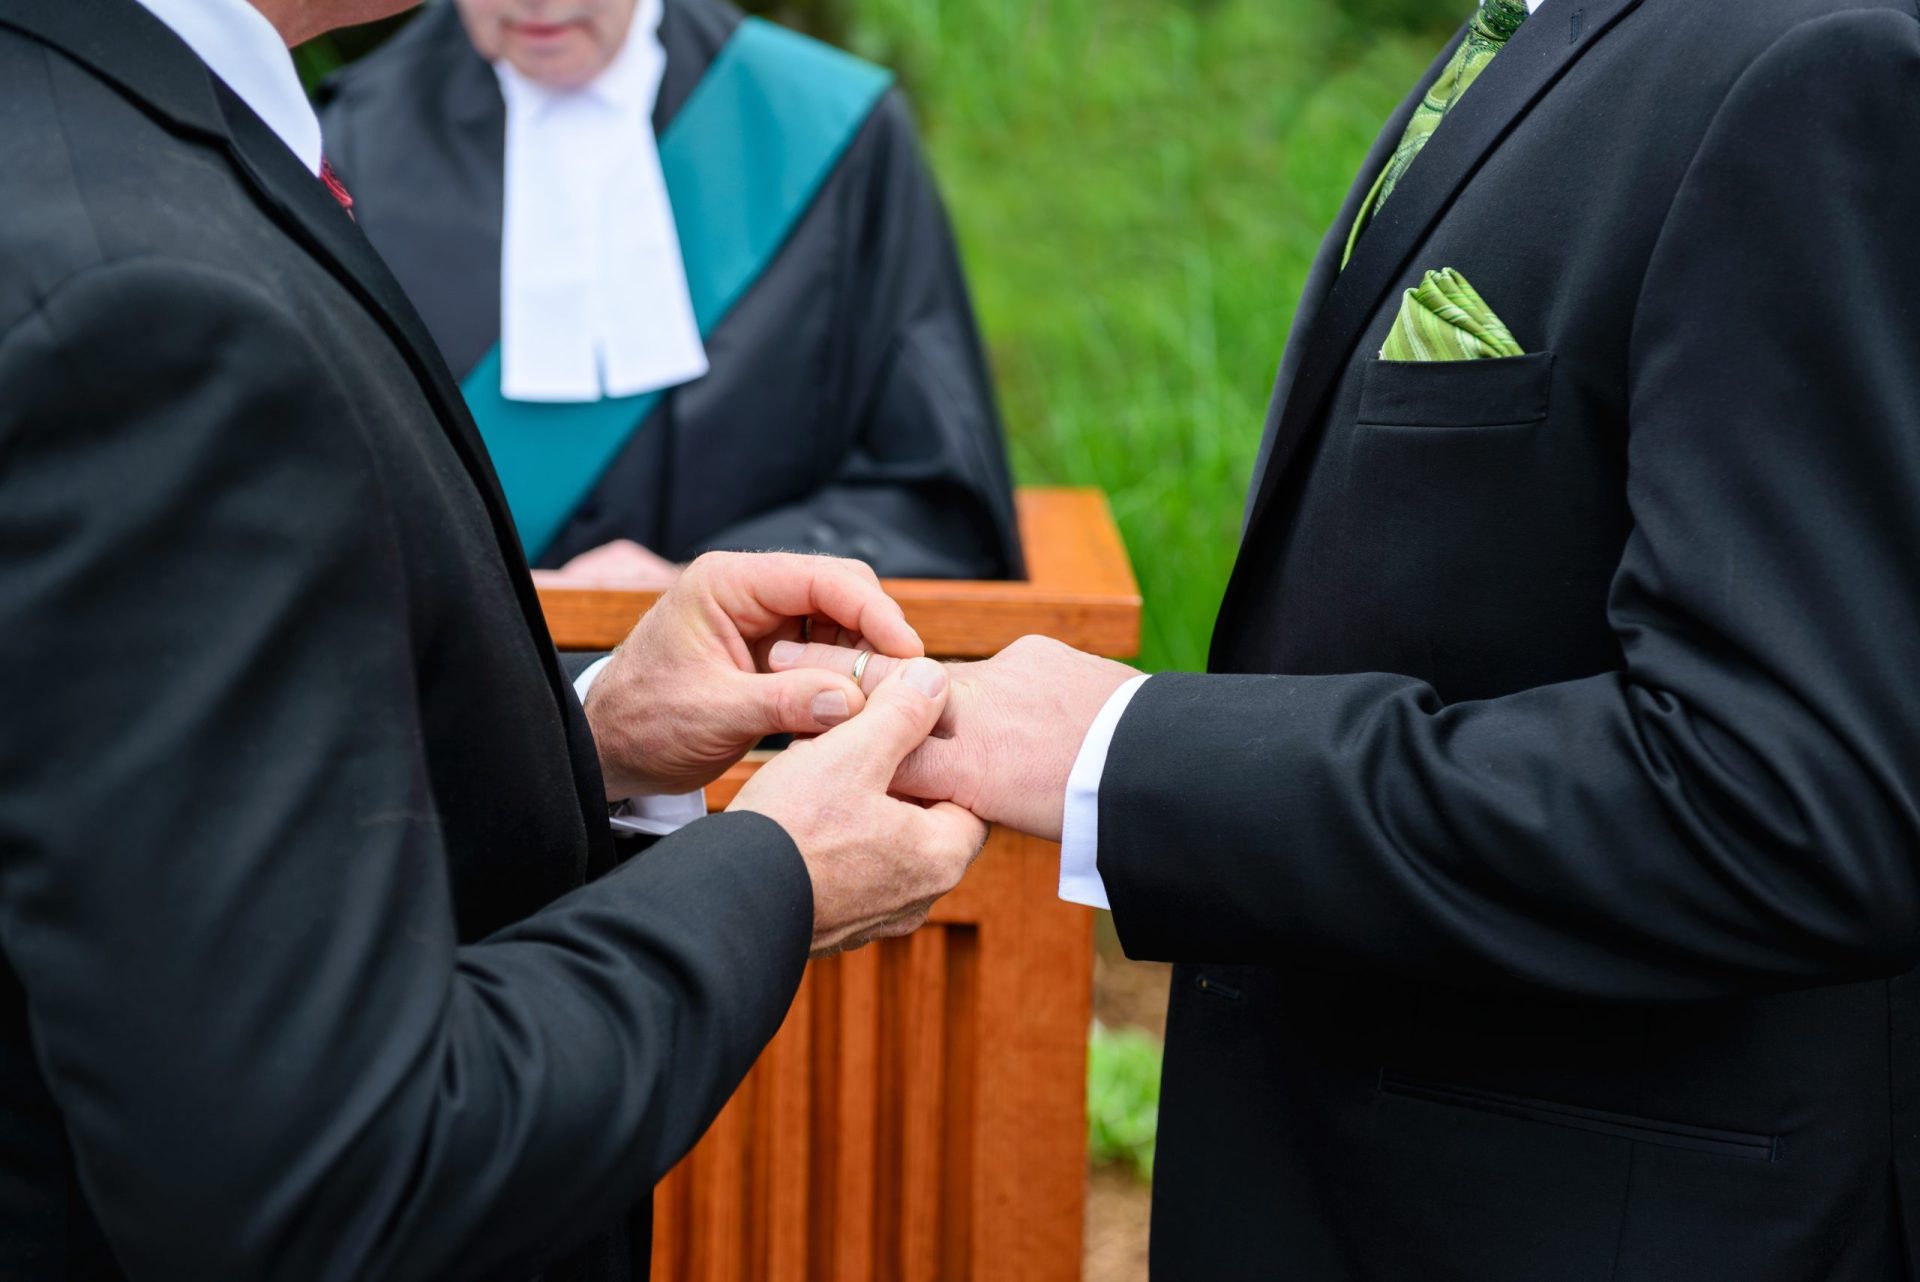 Finlândia. Casamento homossexual aprovado no país